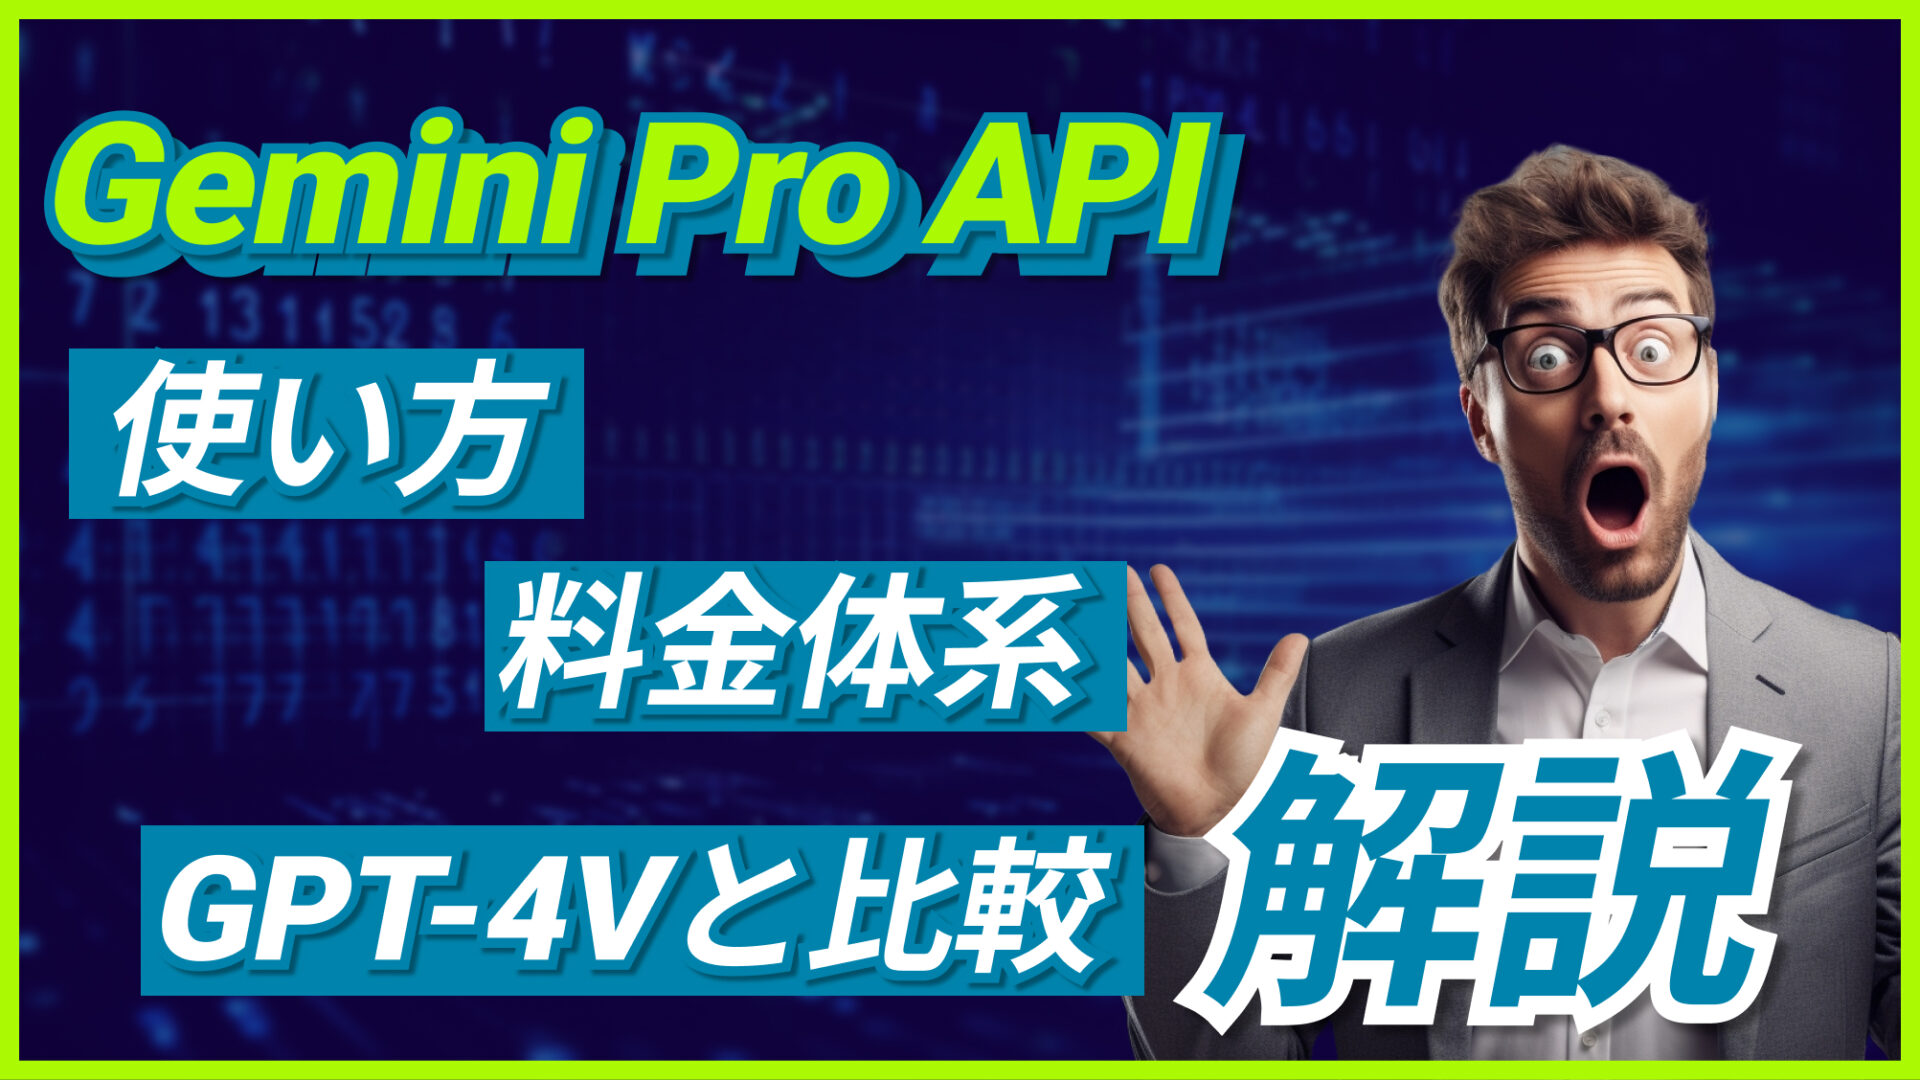 Gemini Pro API 使い方 料金体系 GPT-4V 比較